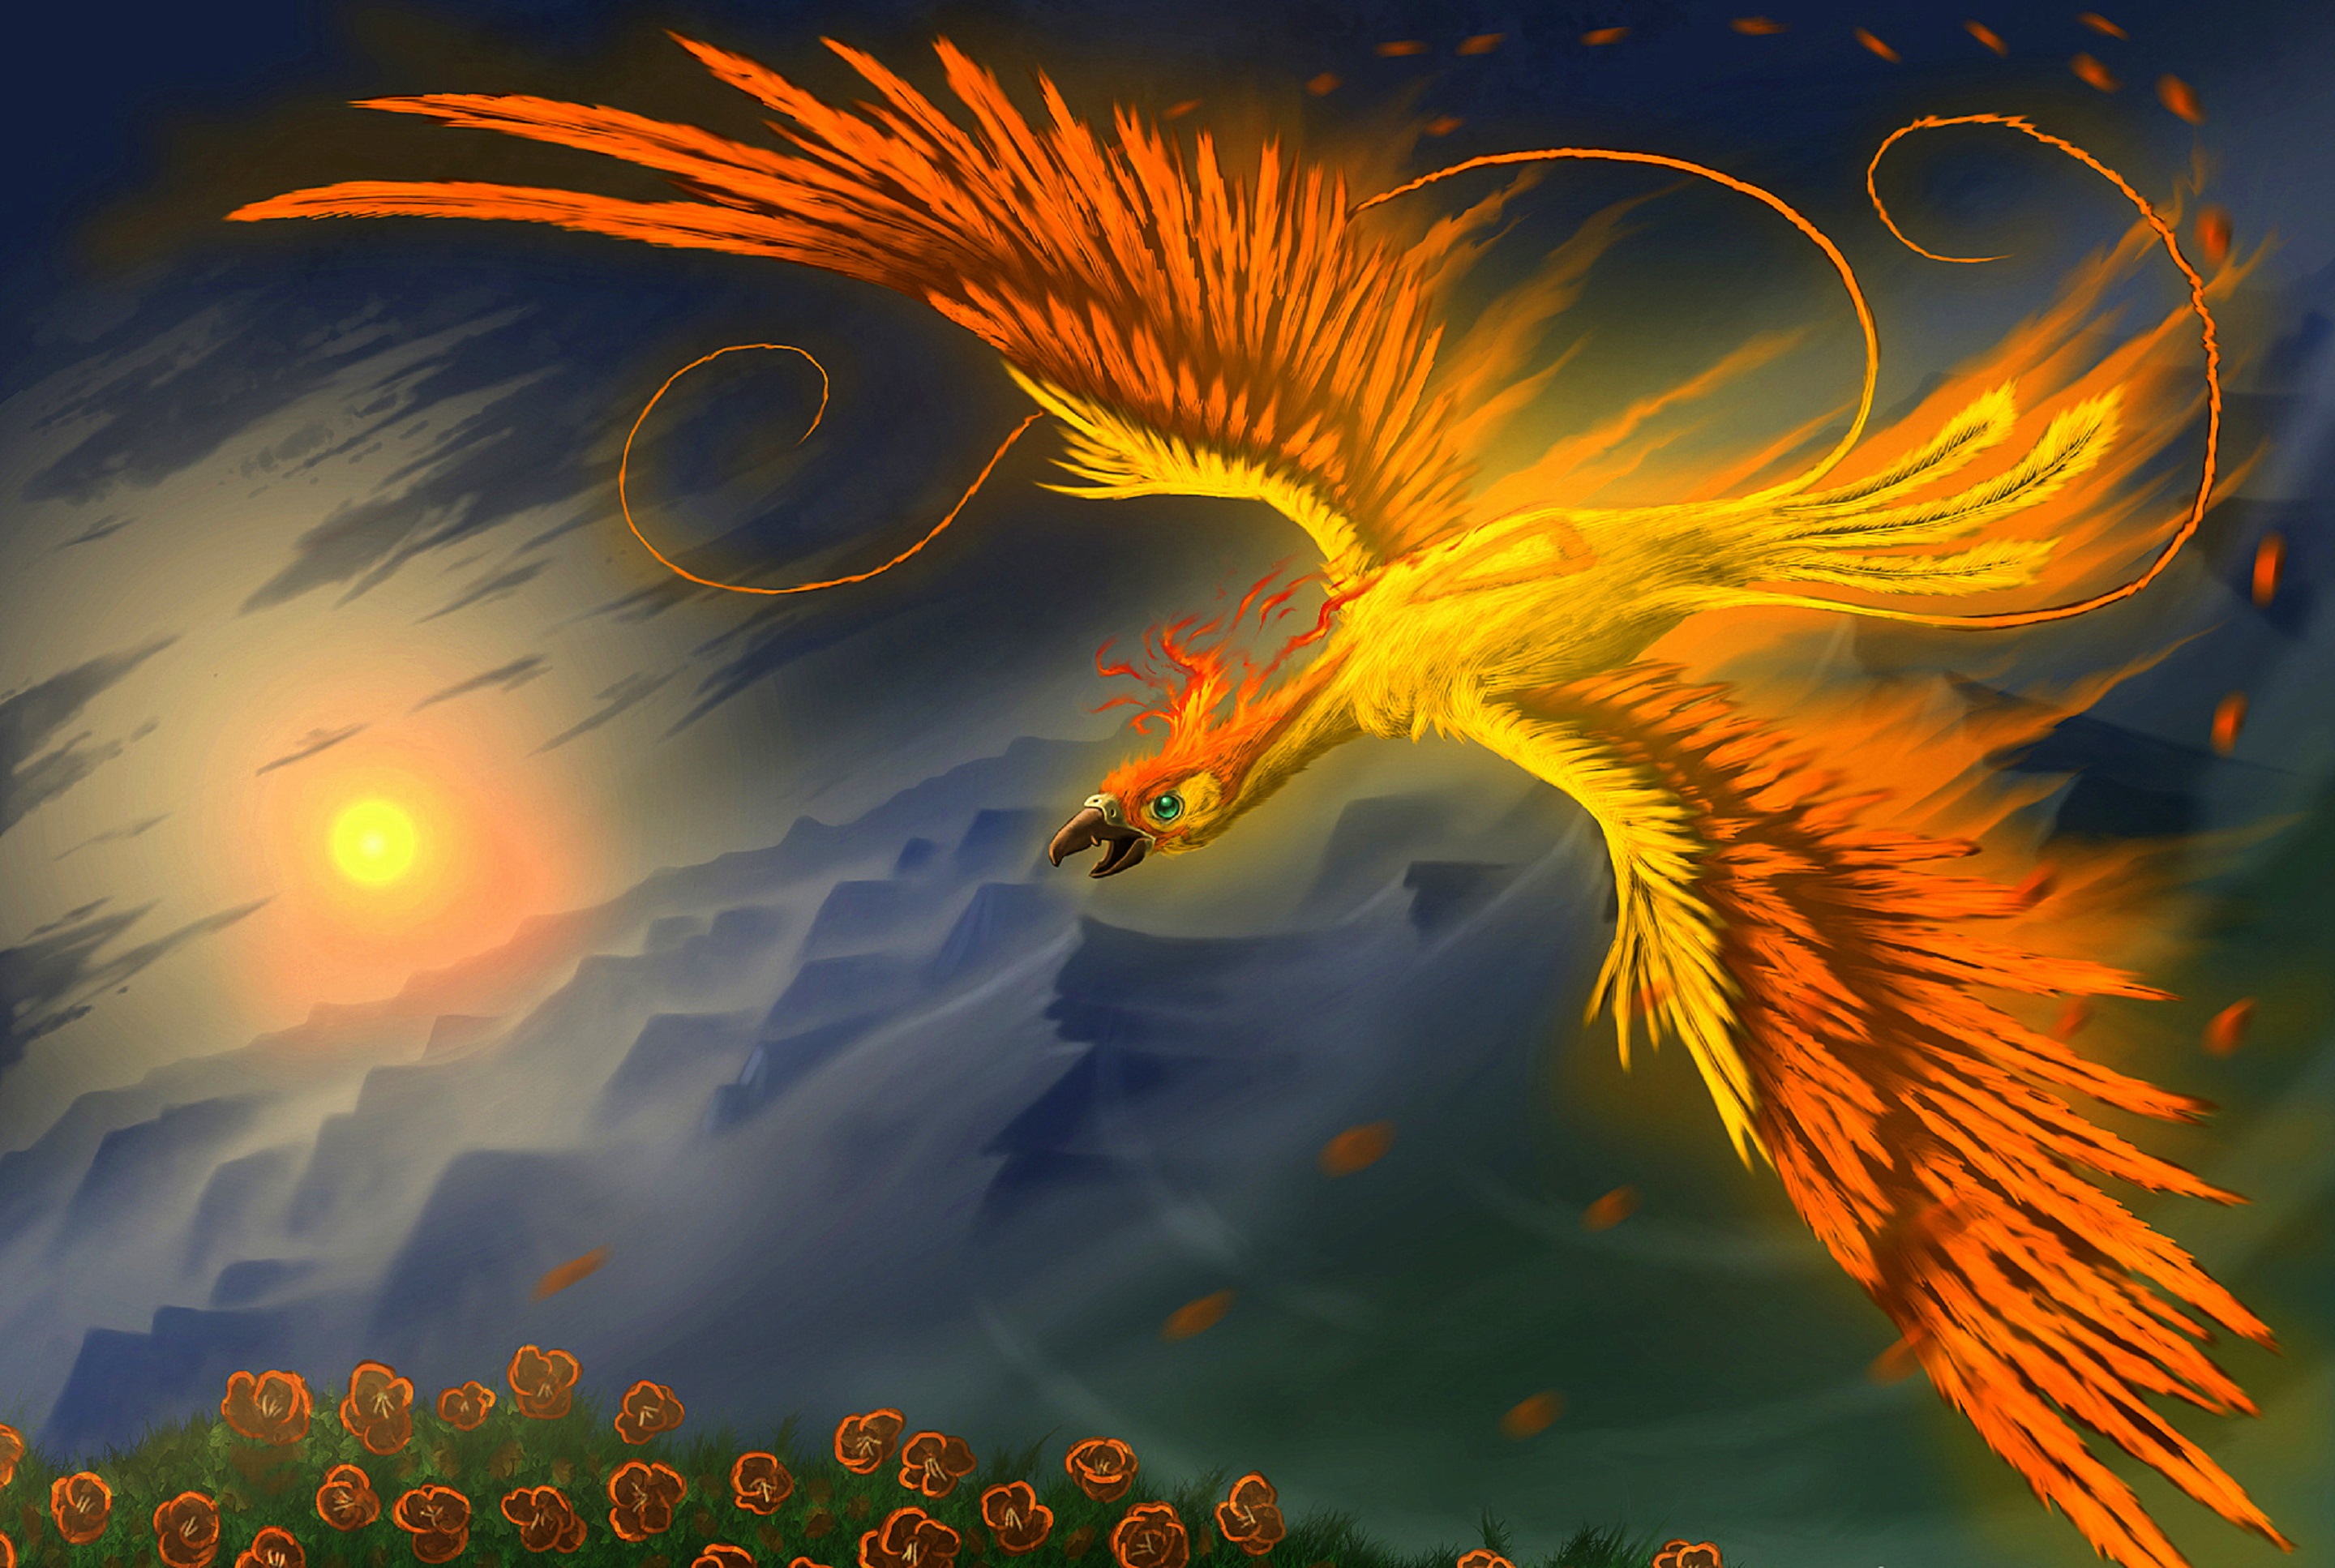 Golden Phoenix by Ignacio Cariman